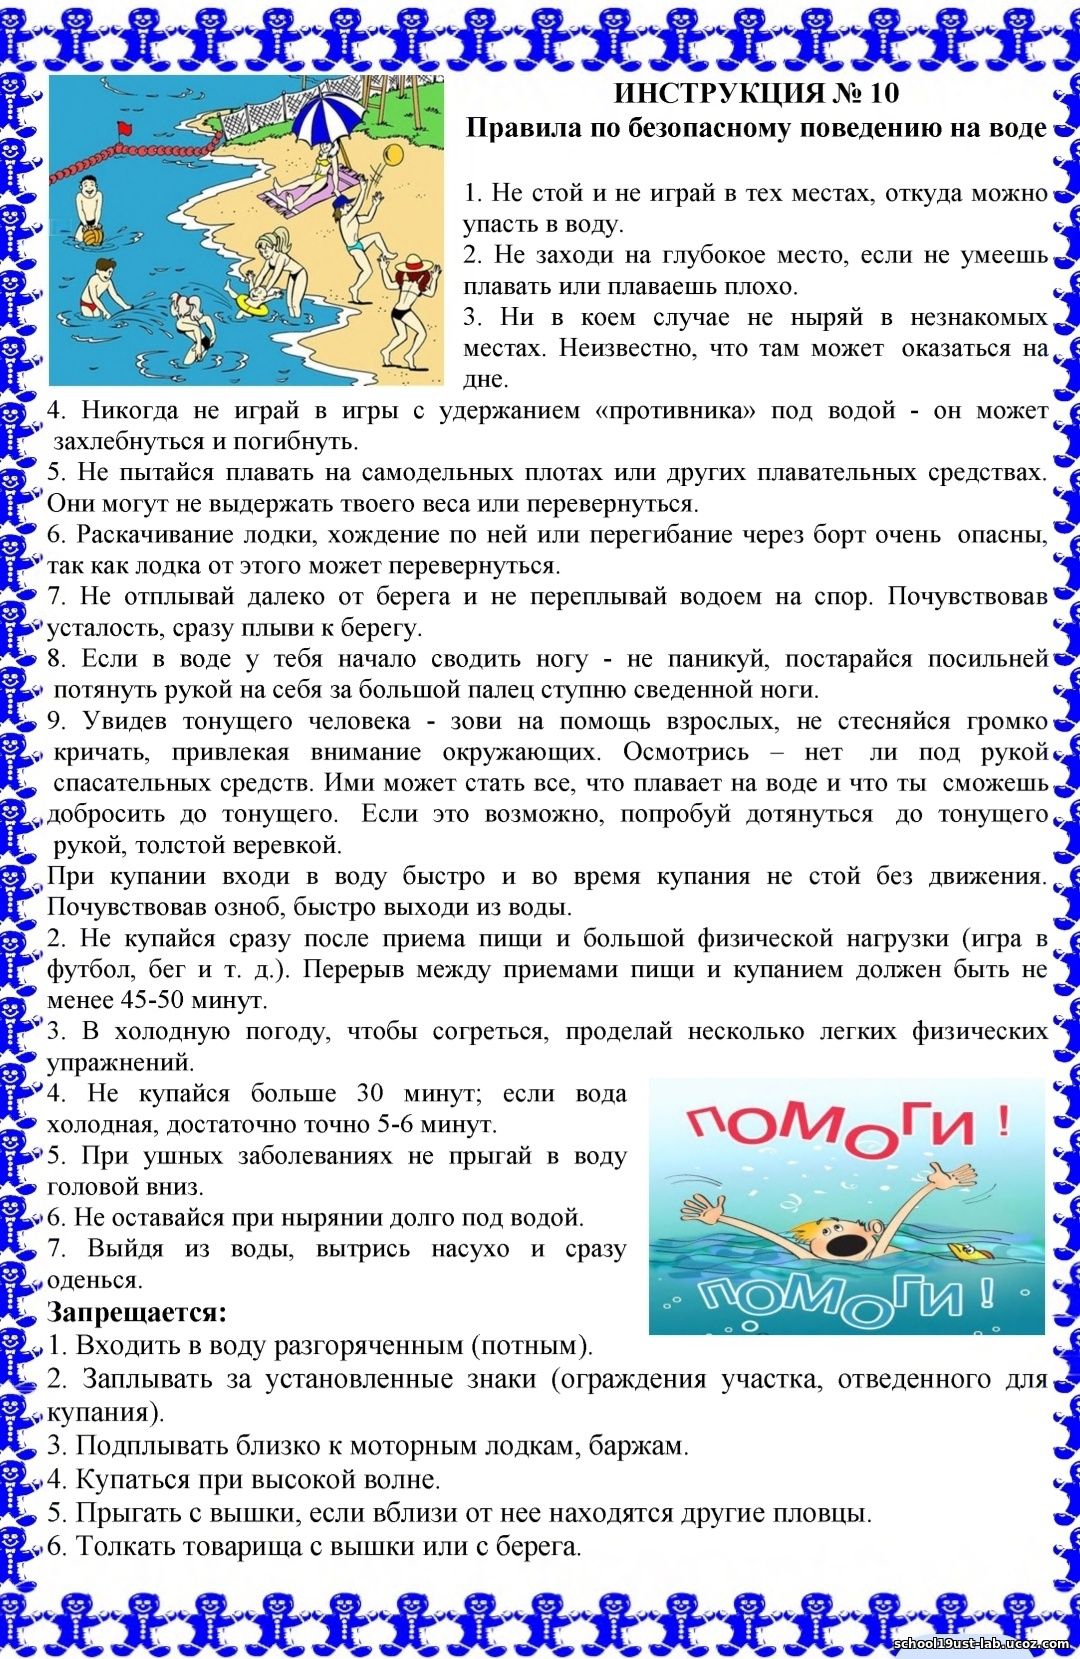 http://school19ust-lab.ucoz.com/doc/kanikuly/leto-2023/bezopasnost_na_vode.jpg